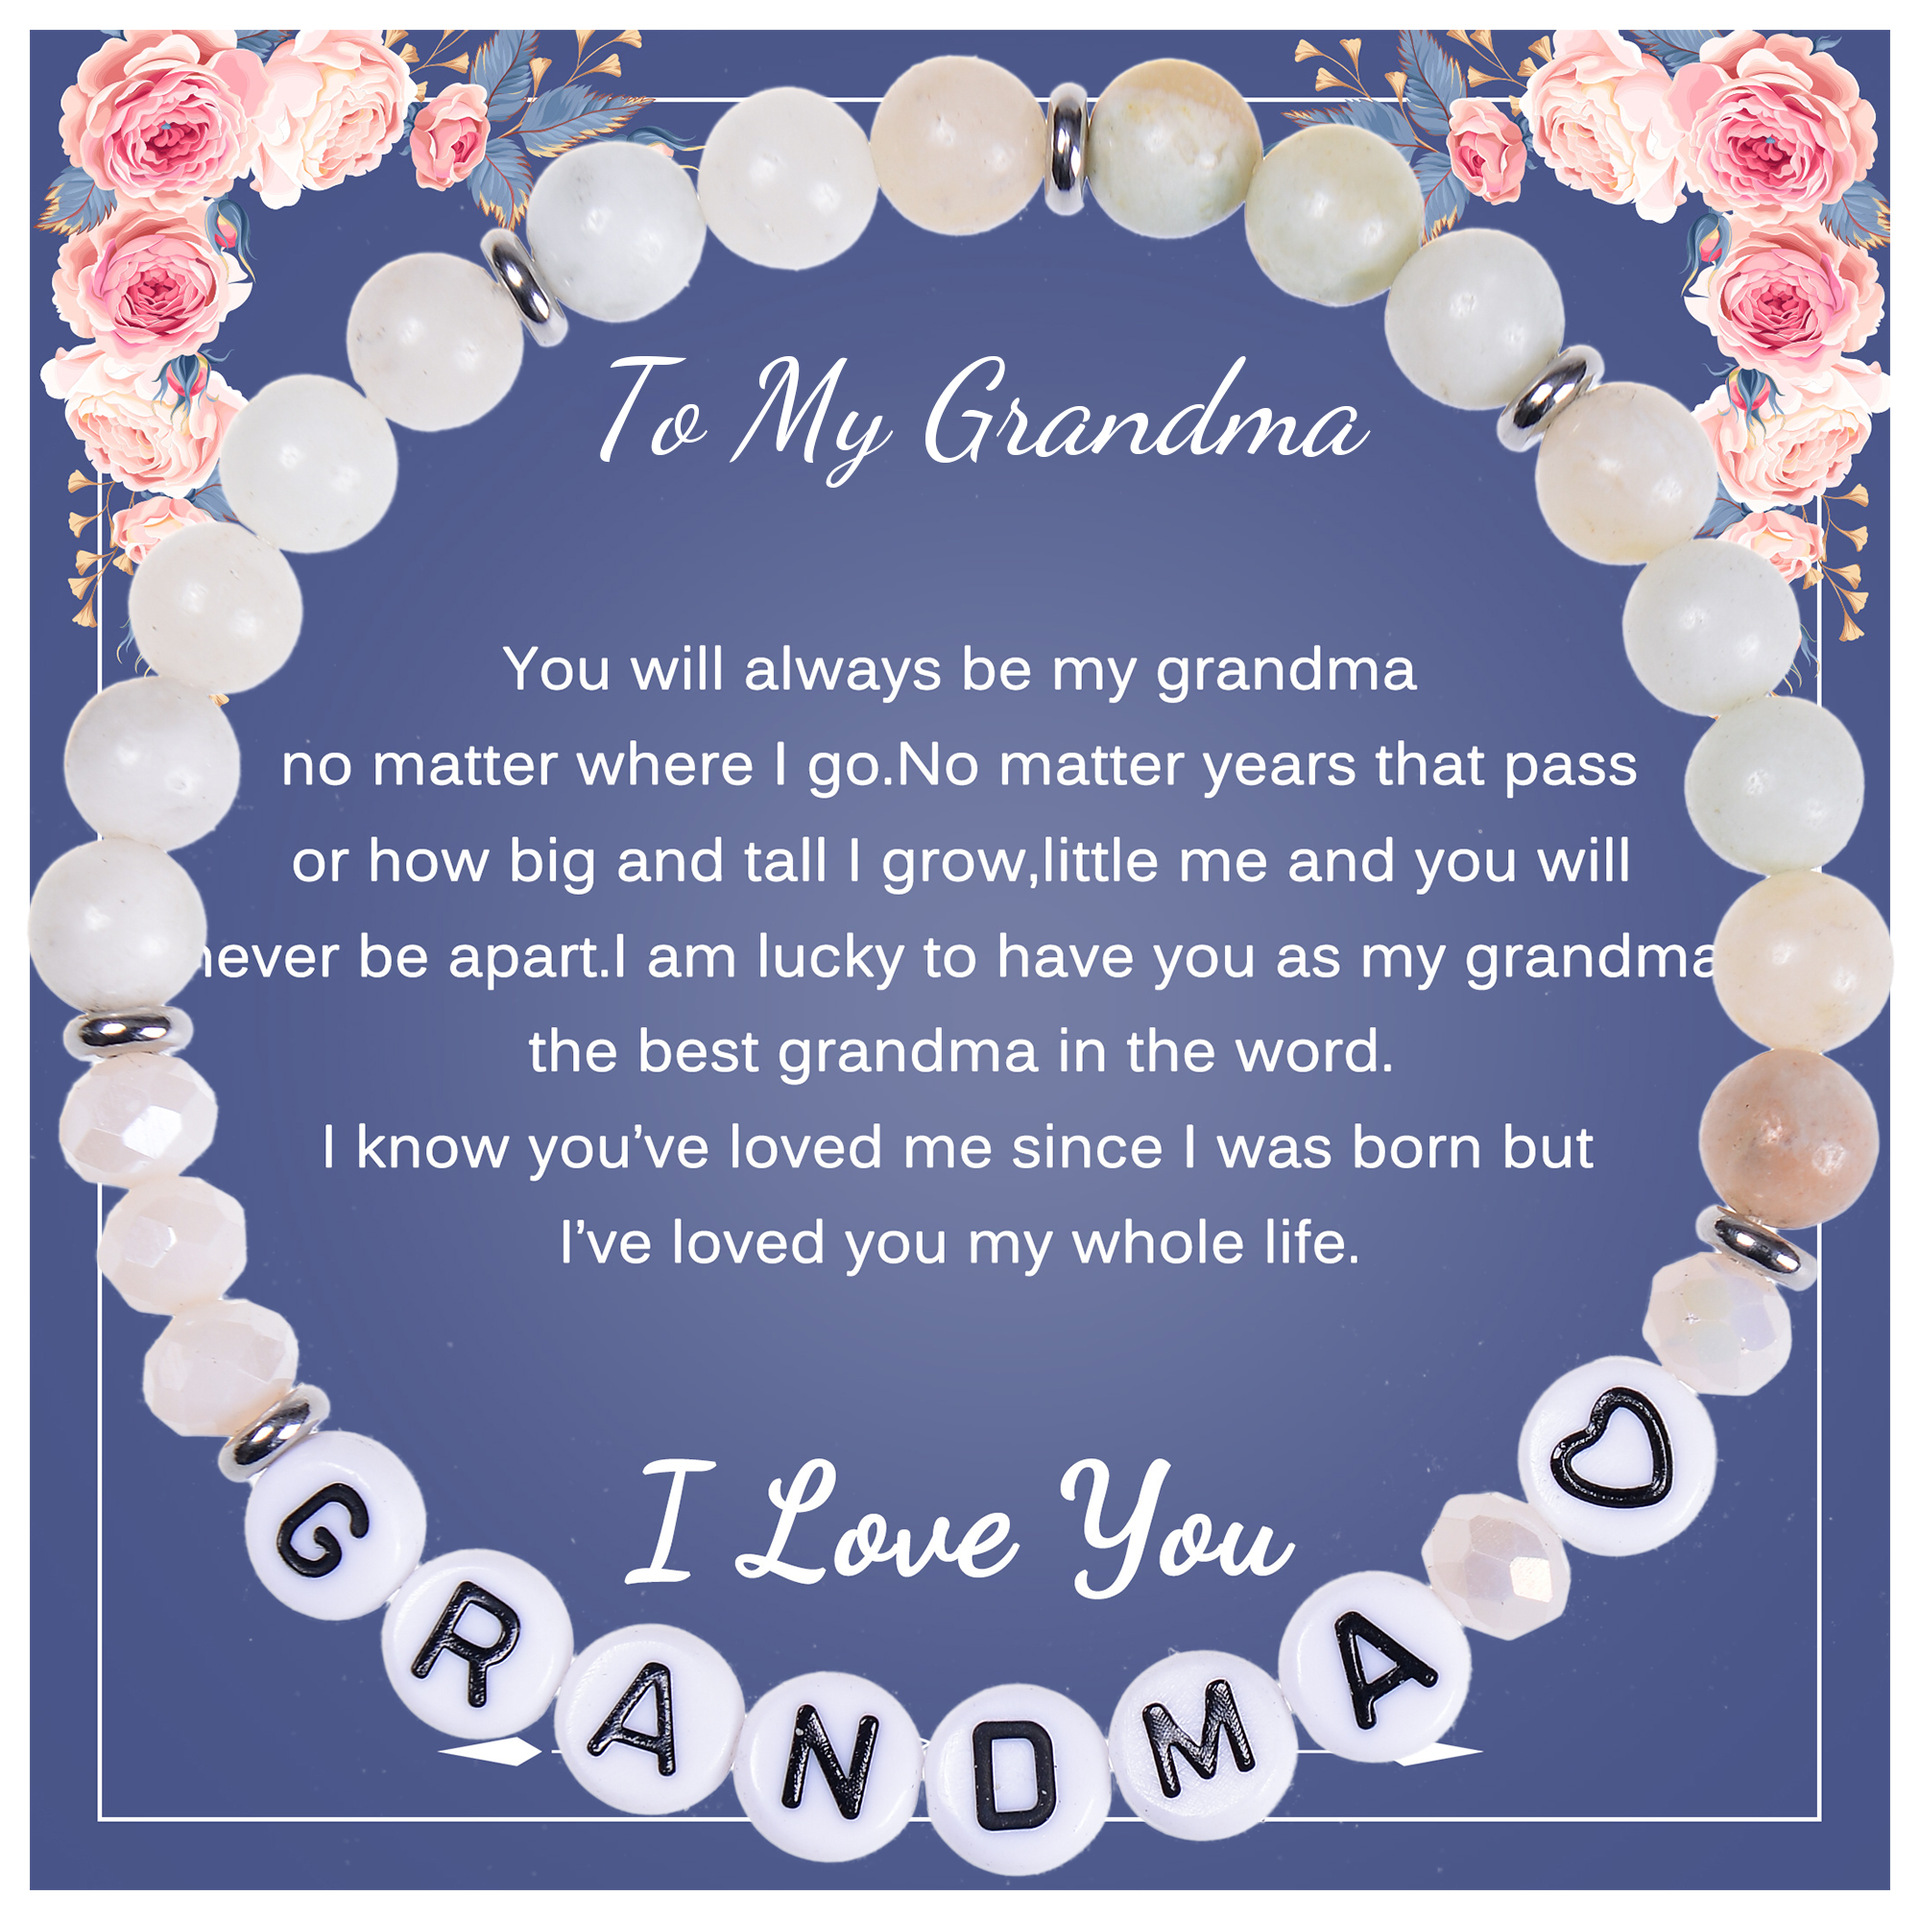 6:To My Grandma